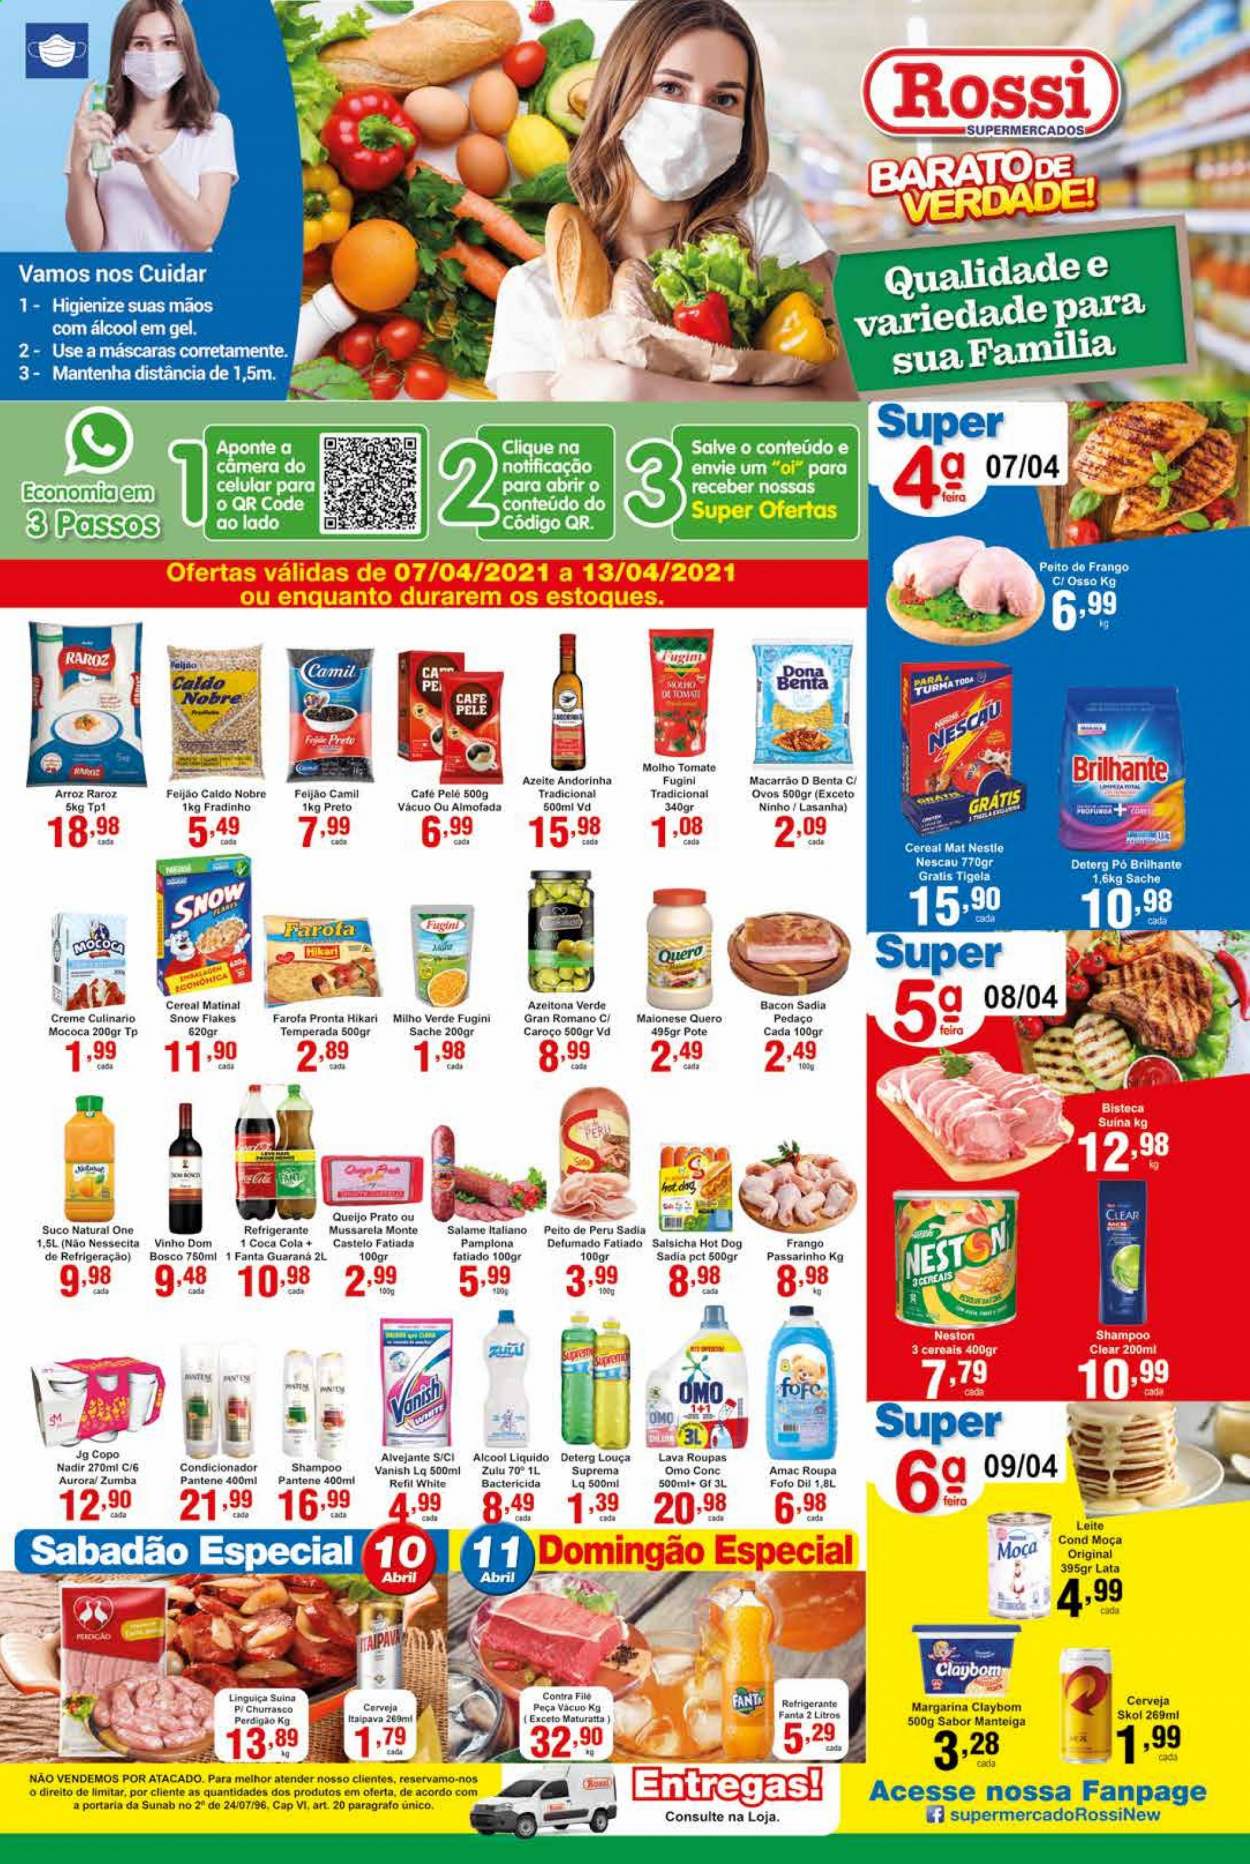 Encarte Rossi Supermercados  - 07.04.2021 - 13.04.2021.